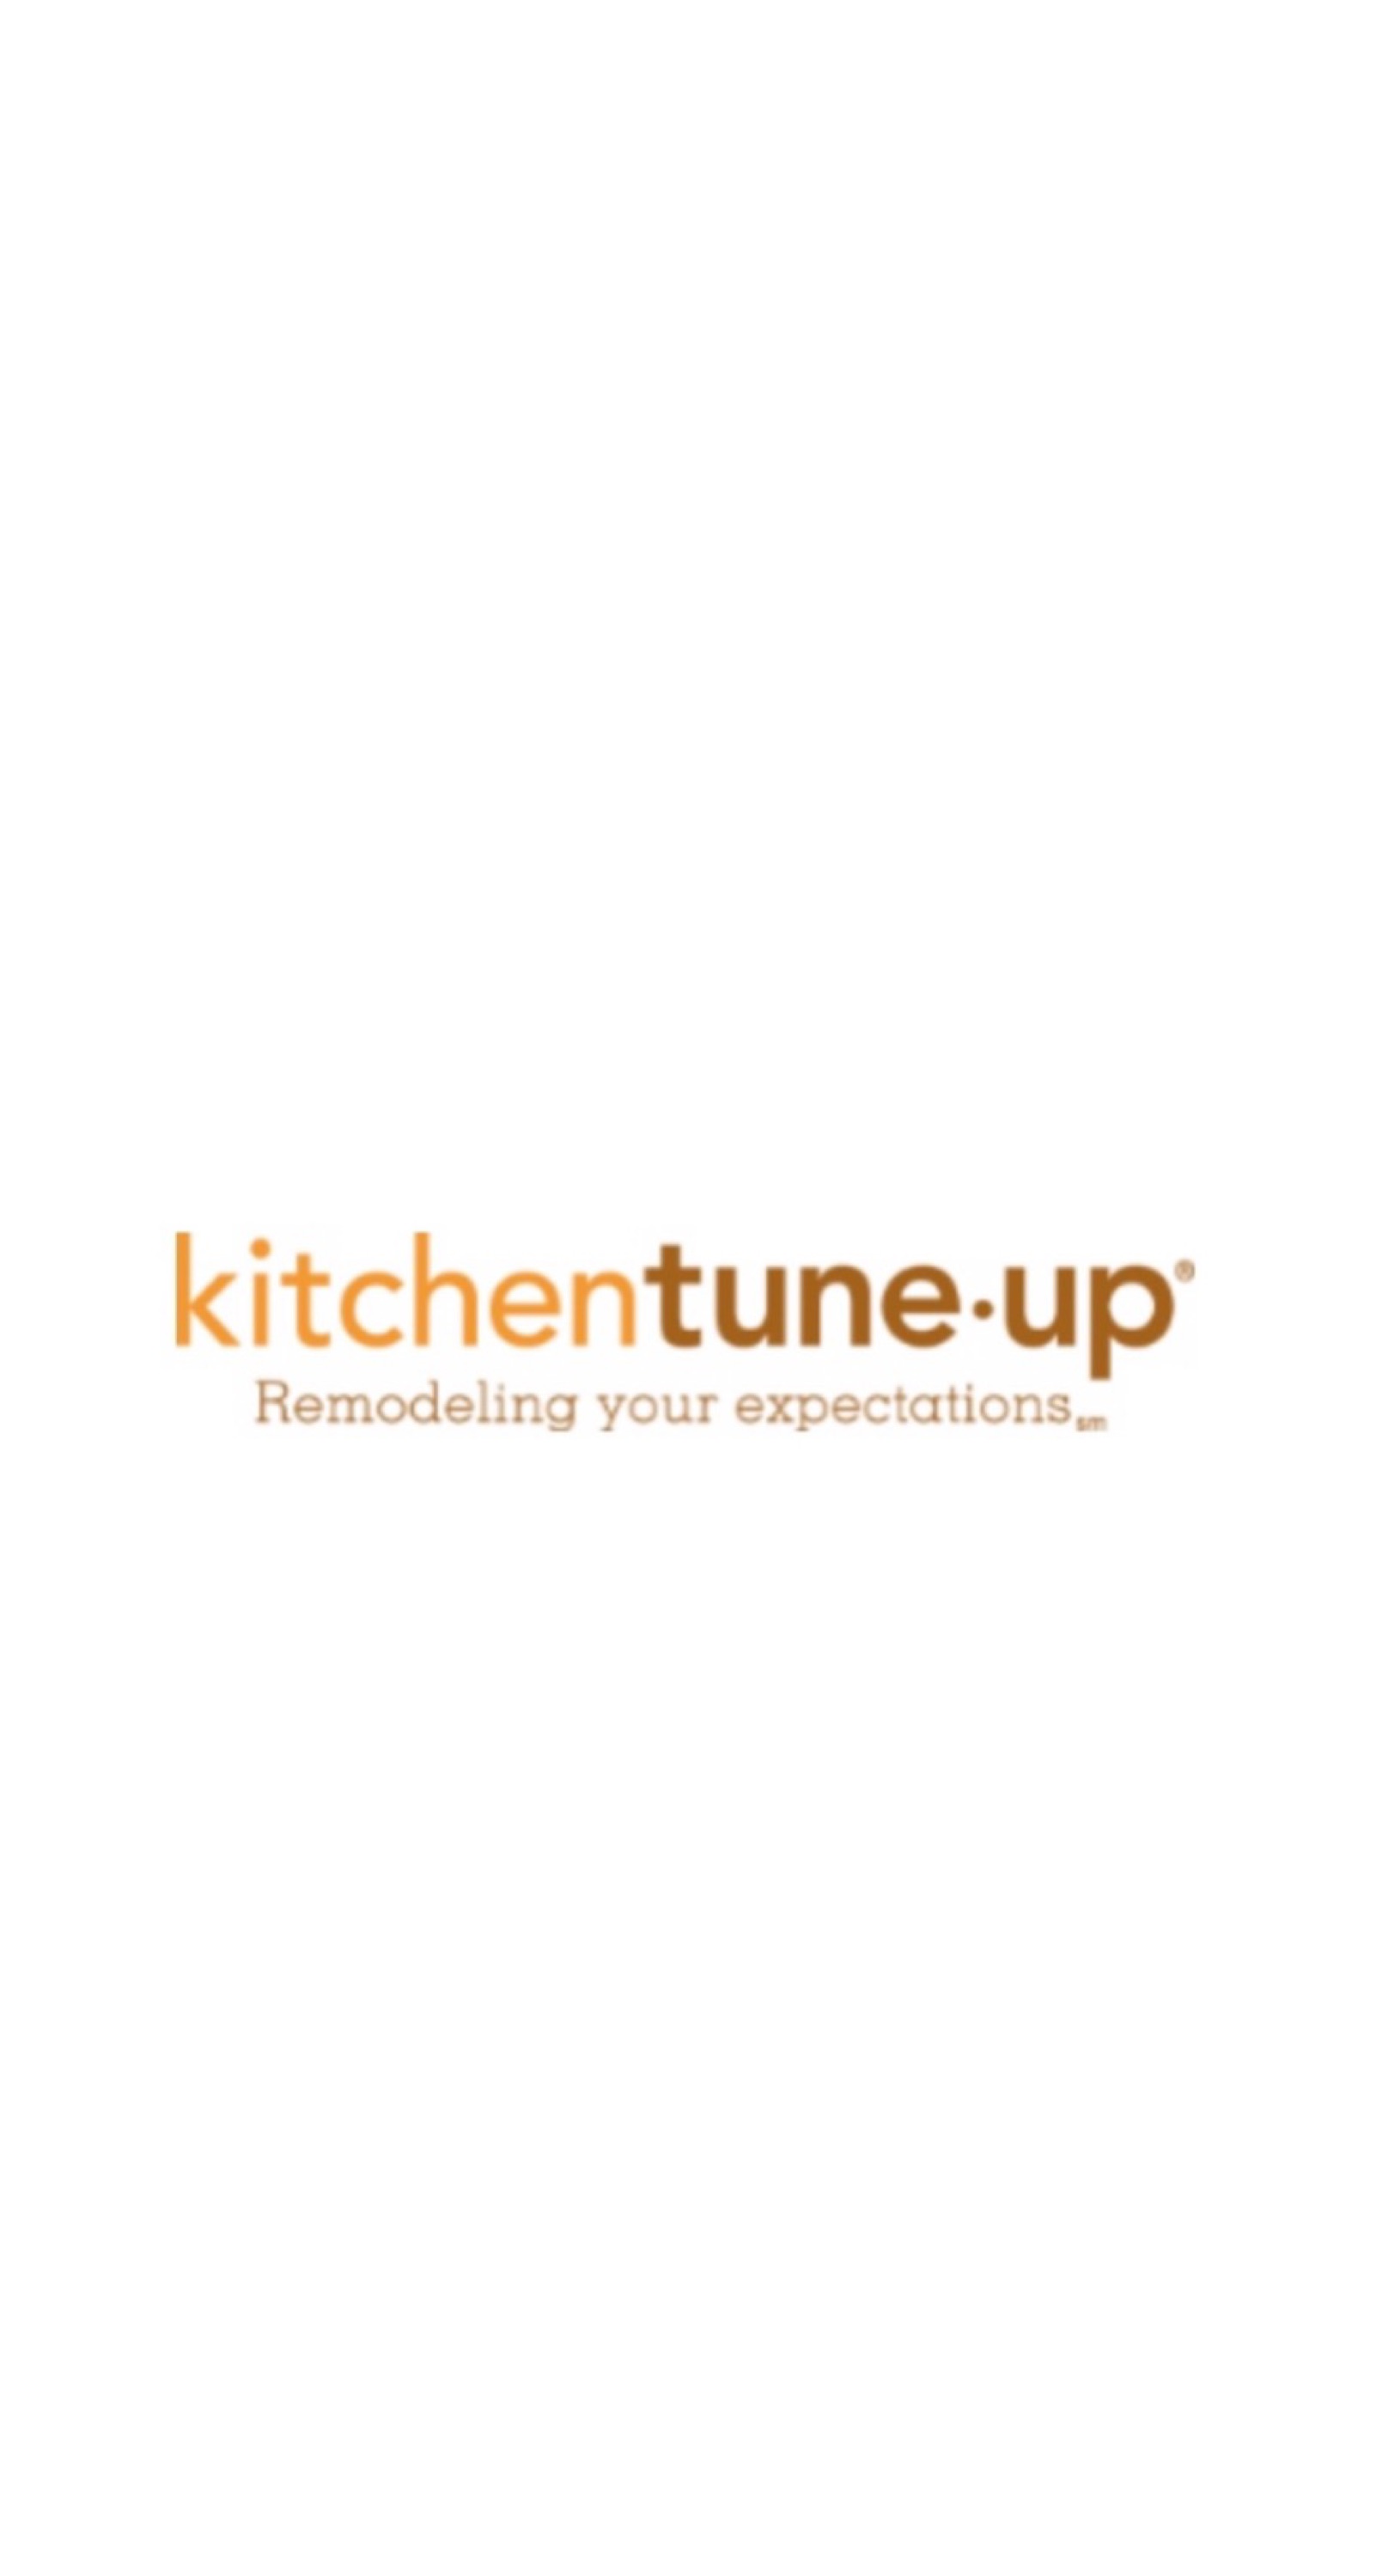 Kitchen Tune-Up Logo